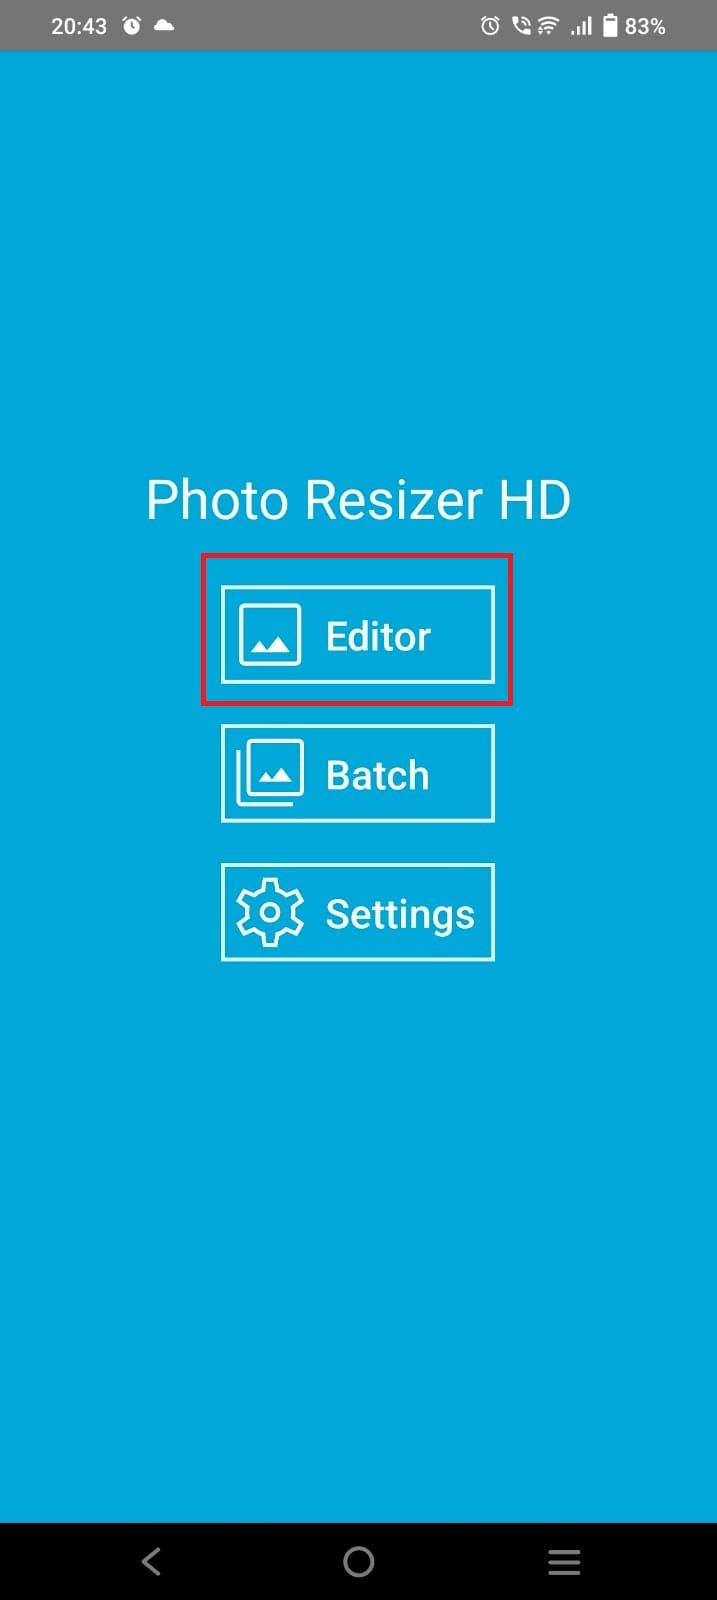 Captura de tela destacando a opção ‘Editor’ no aplicativo Photo Resizer HD